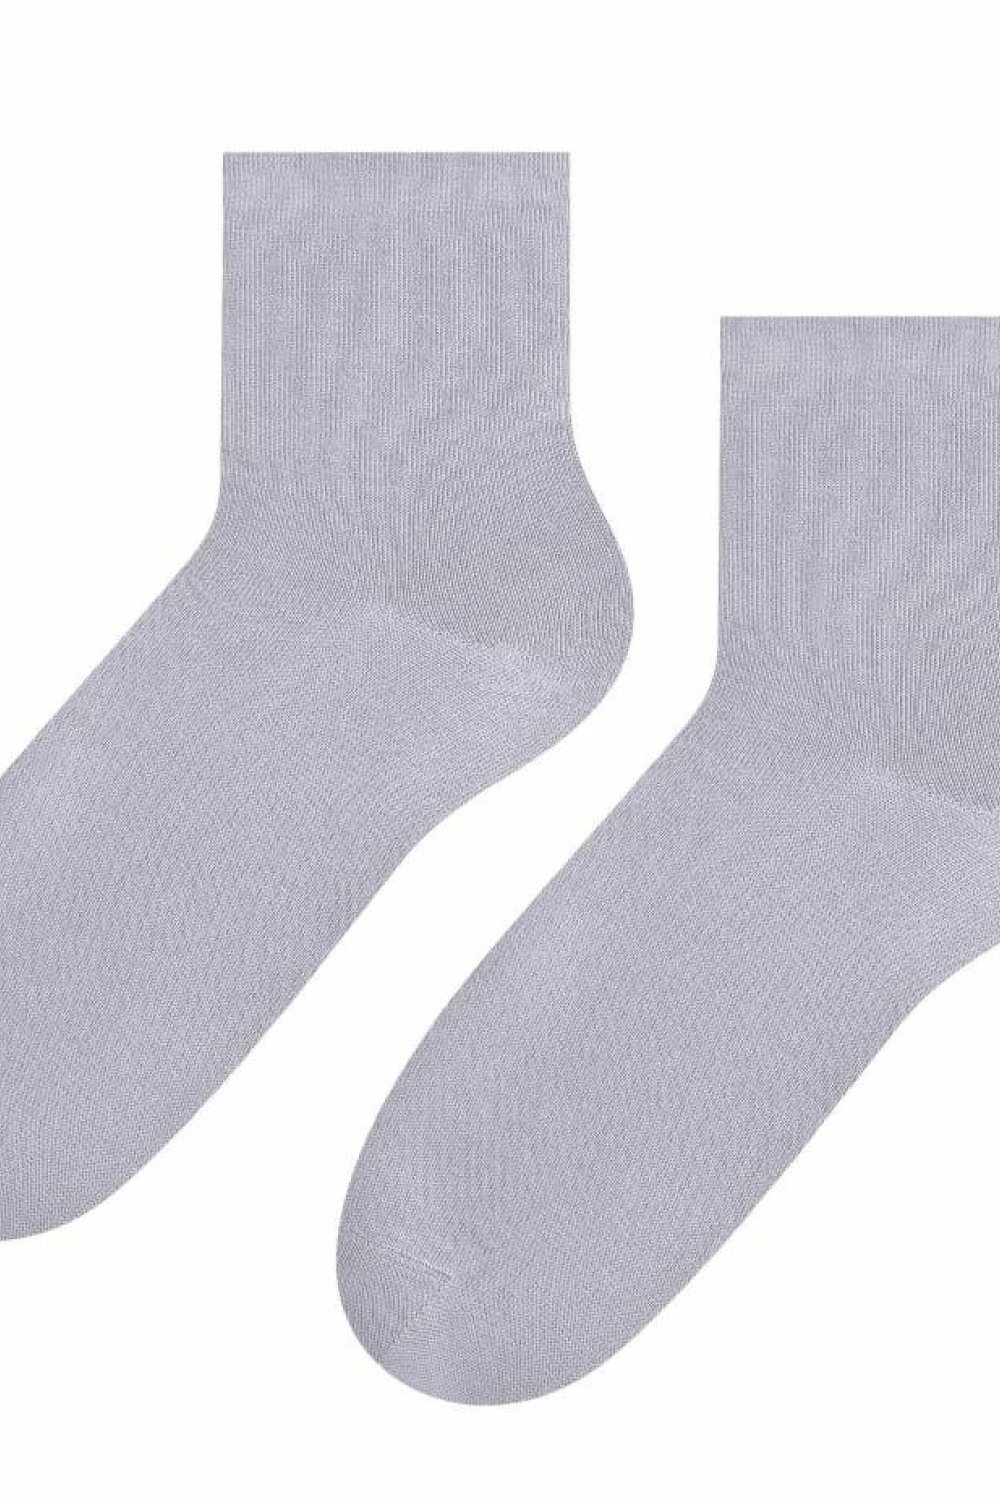 Dámské ponožky 037 grey